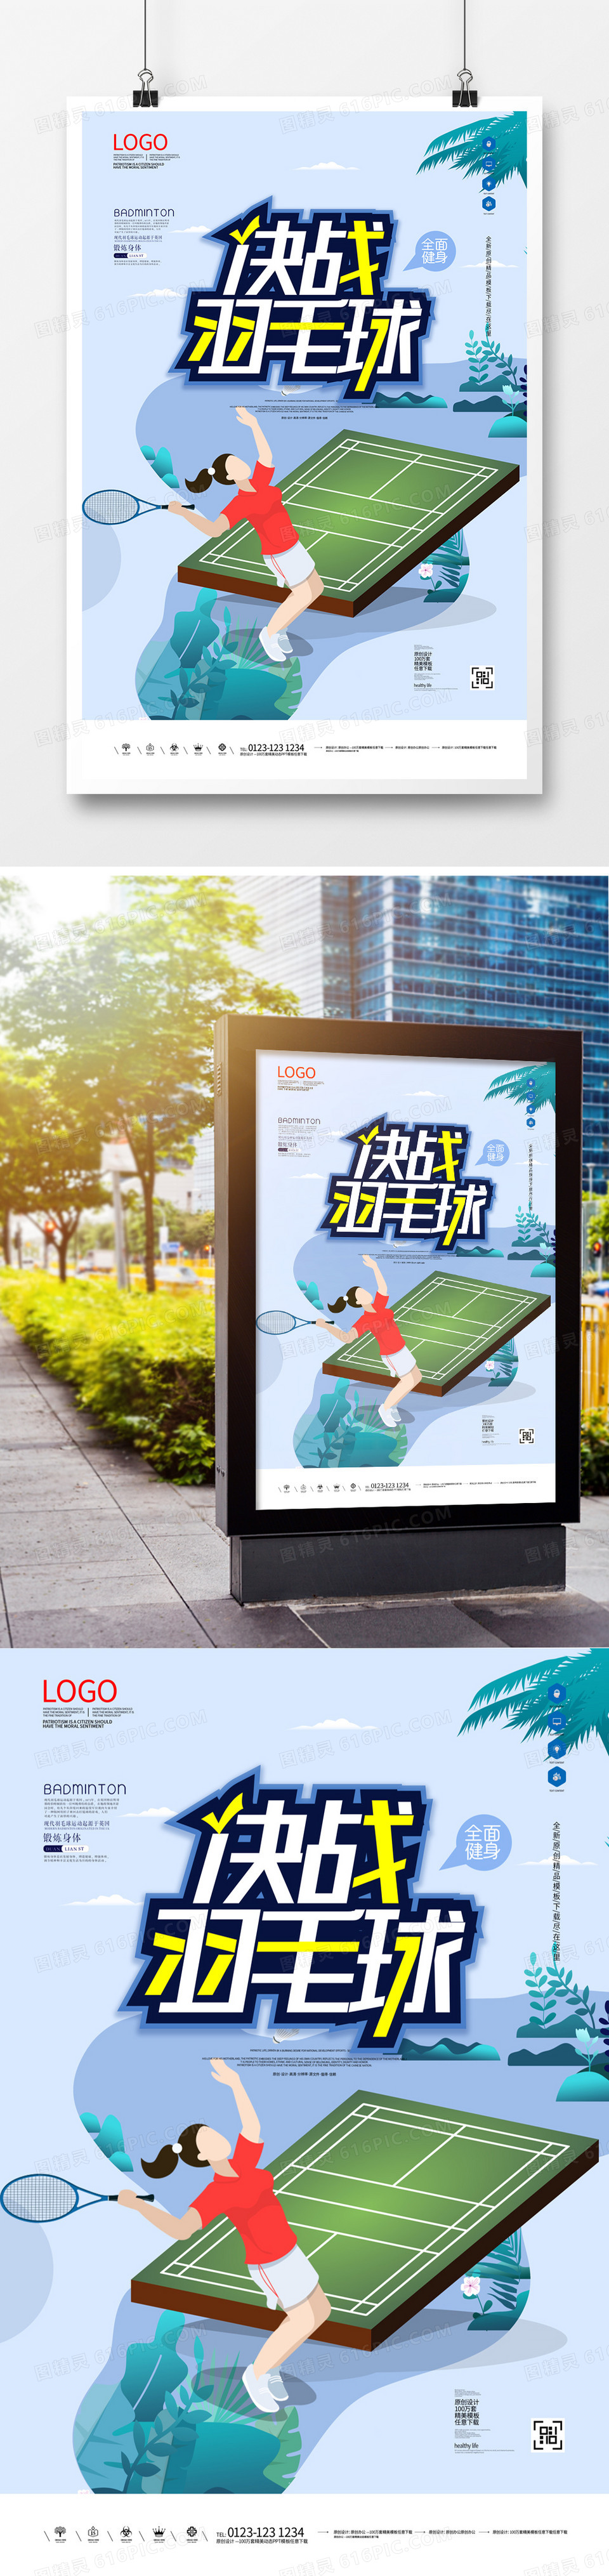 羽毛球宣传海报广告模板设计